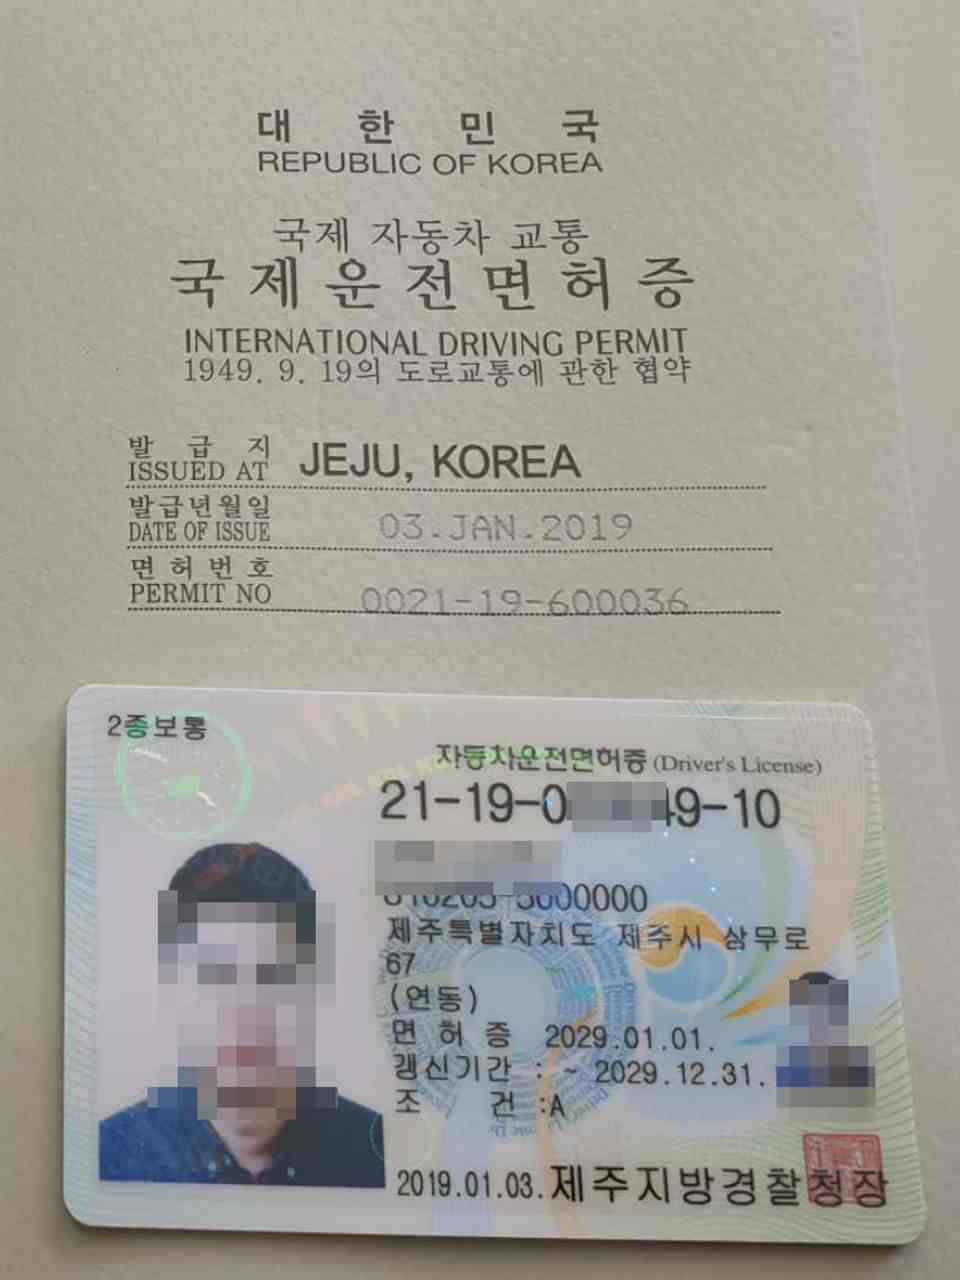 韩国驾照考试流程及注意事项 华人必读